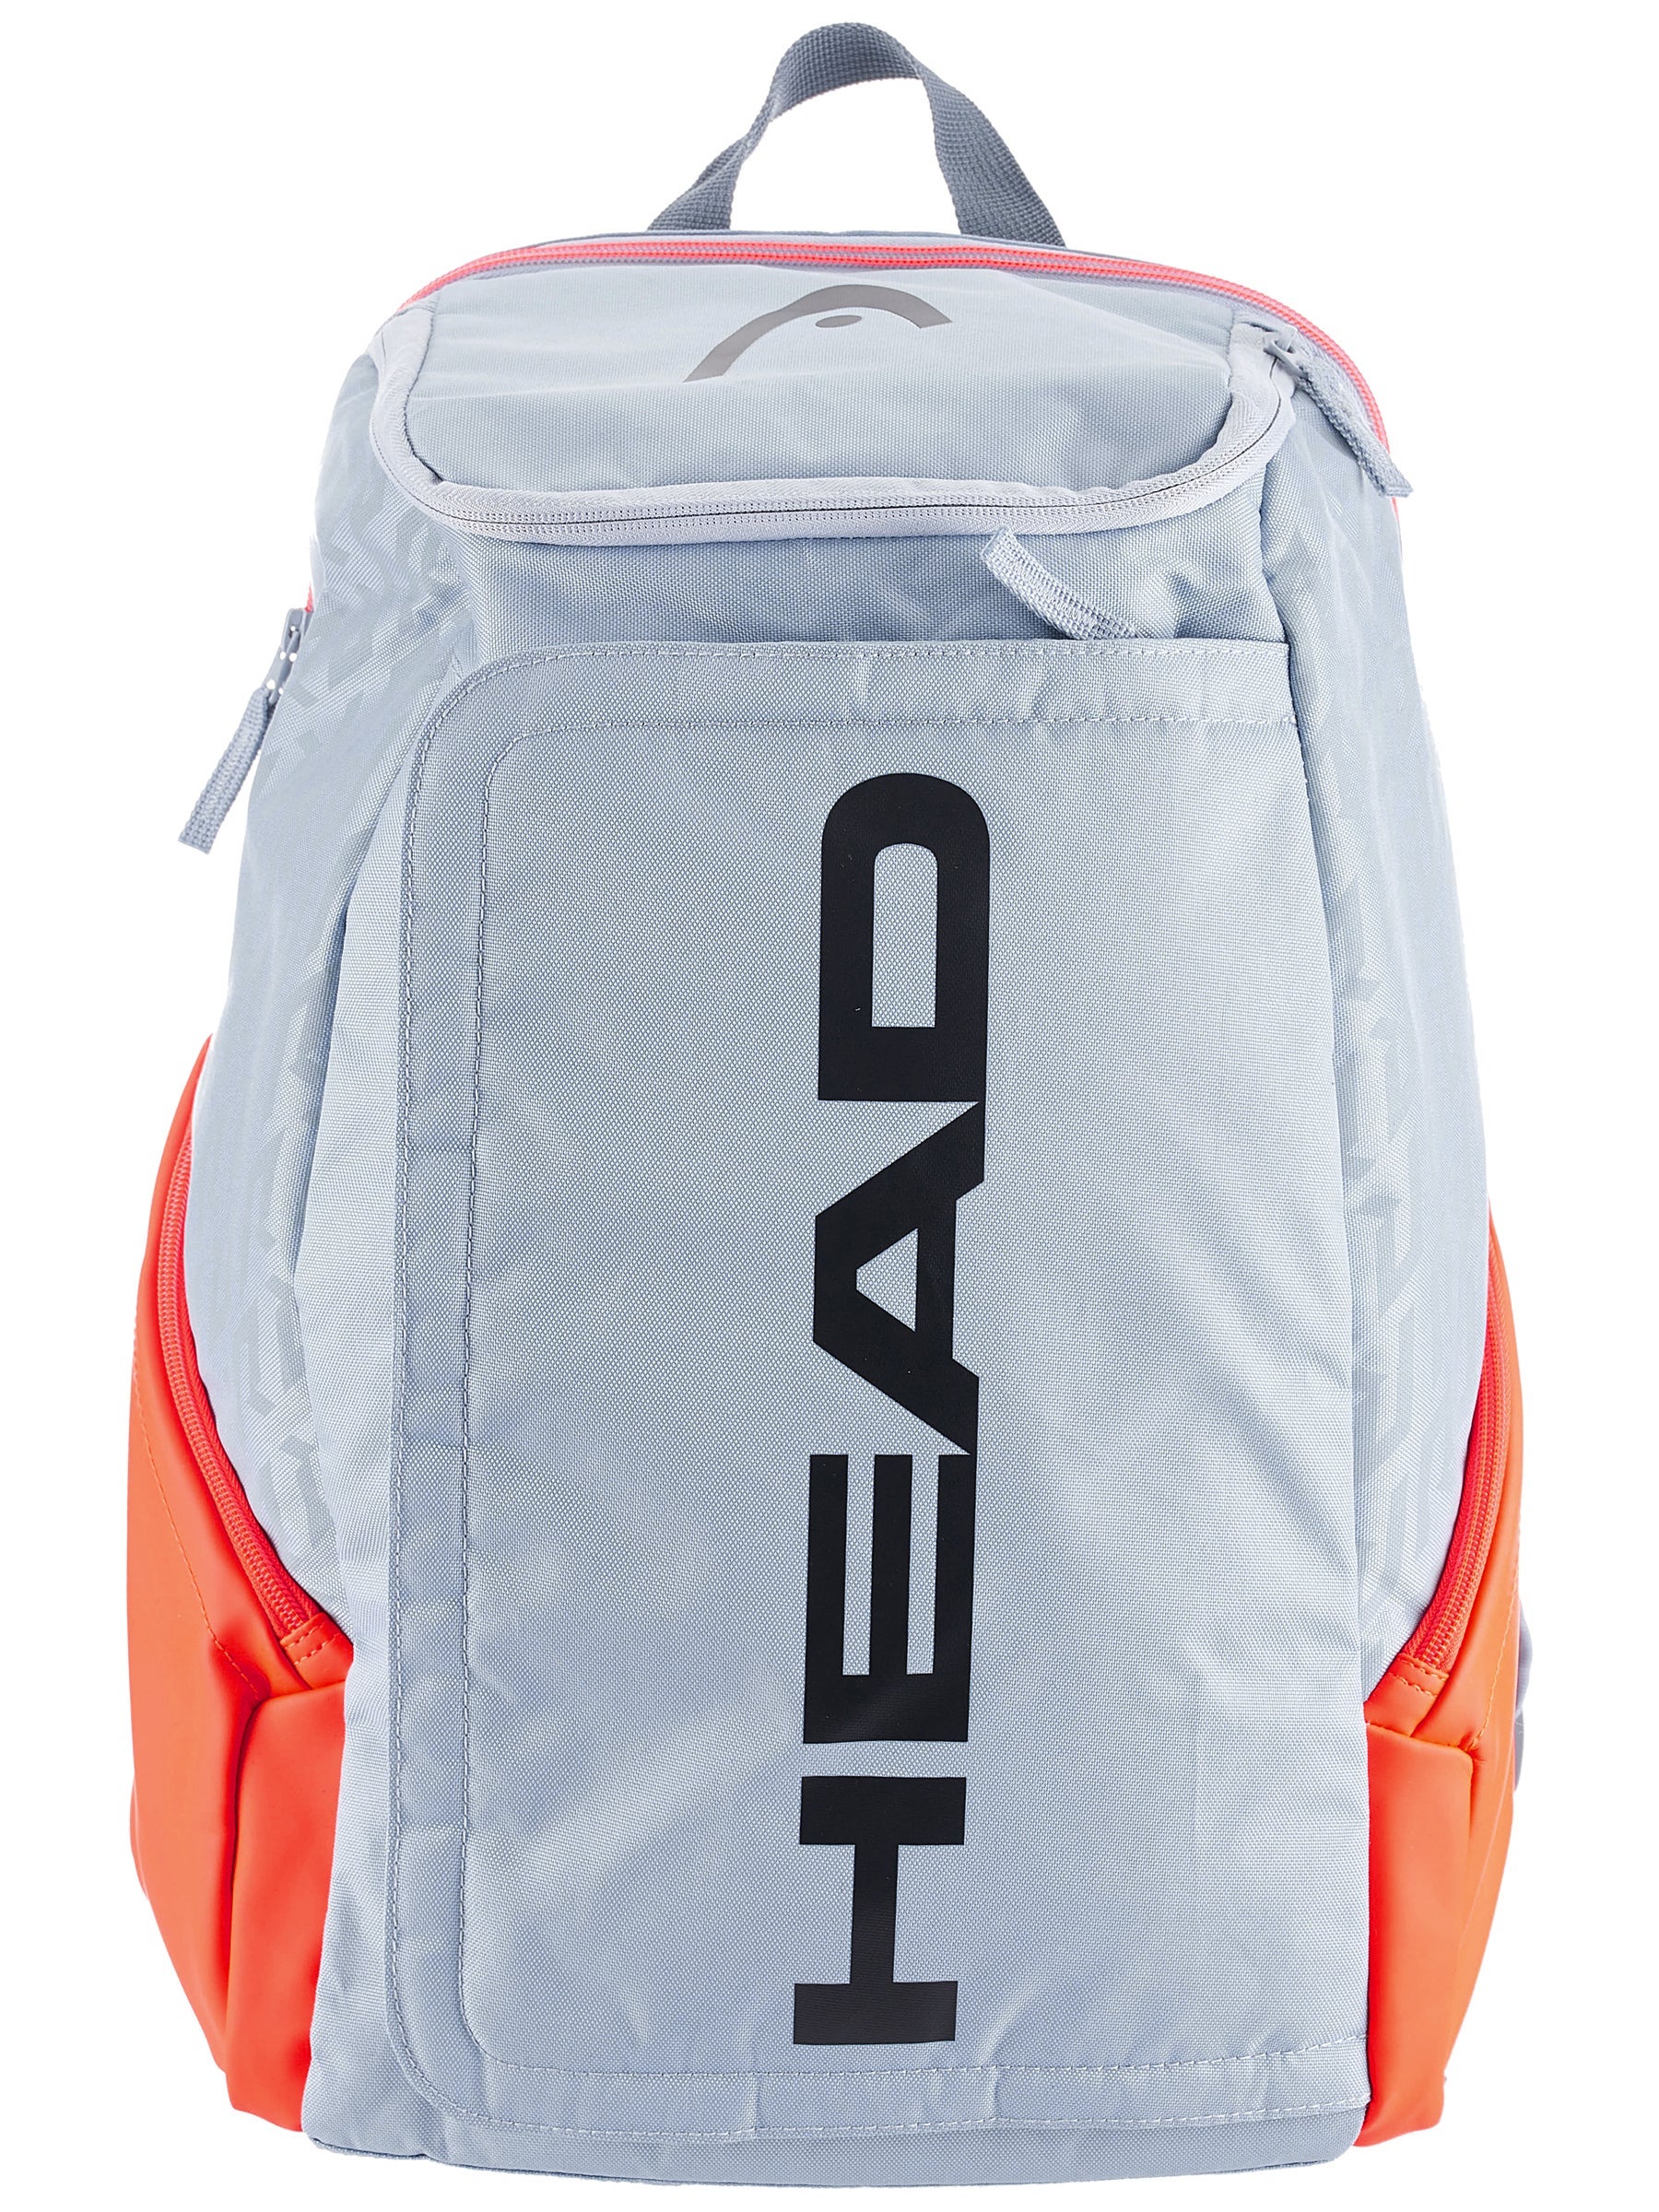 HEAD Rebel Backpack Tennis Bag